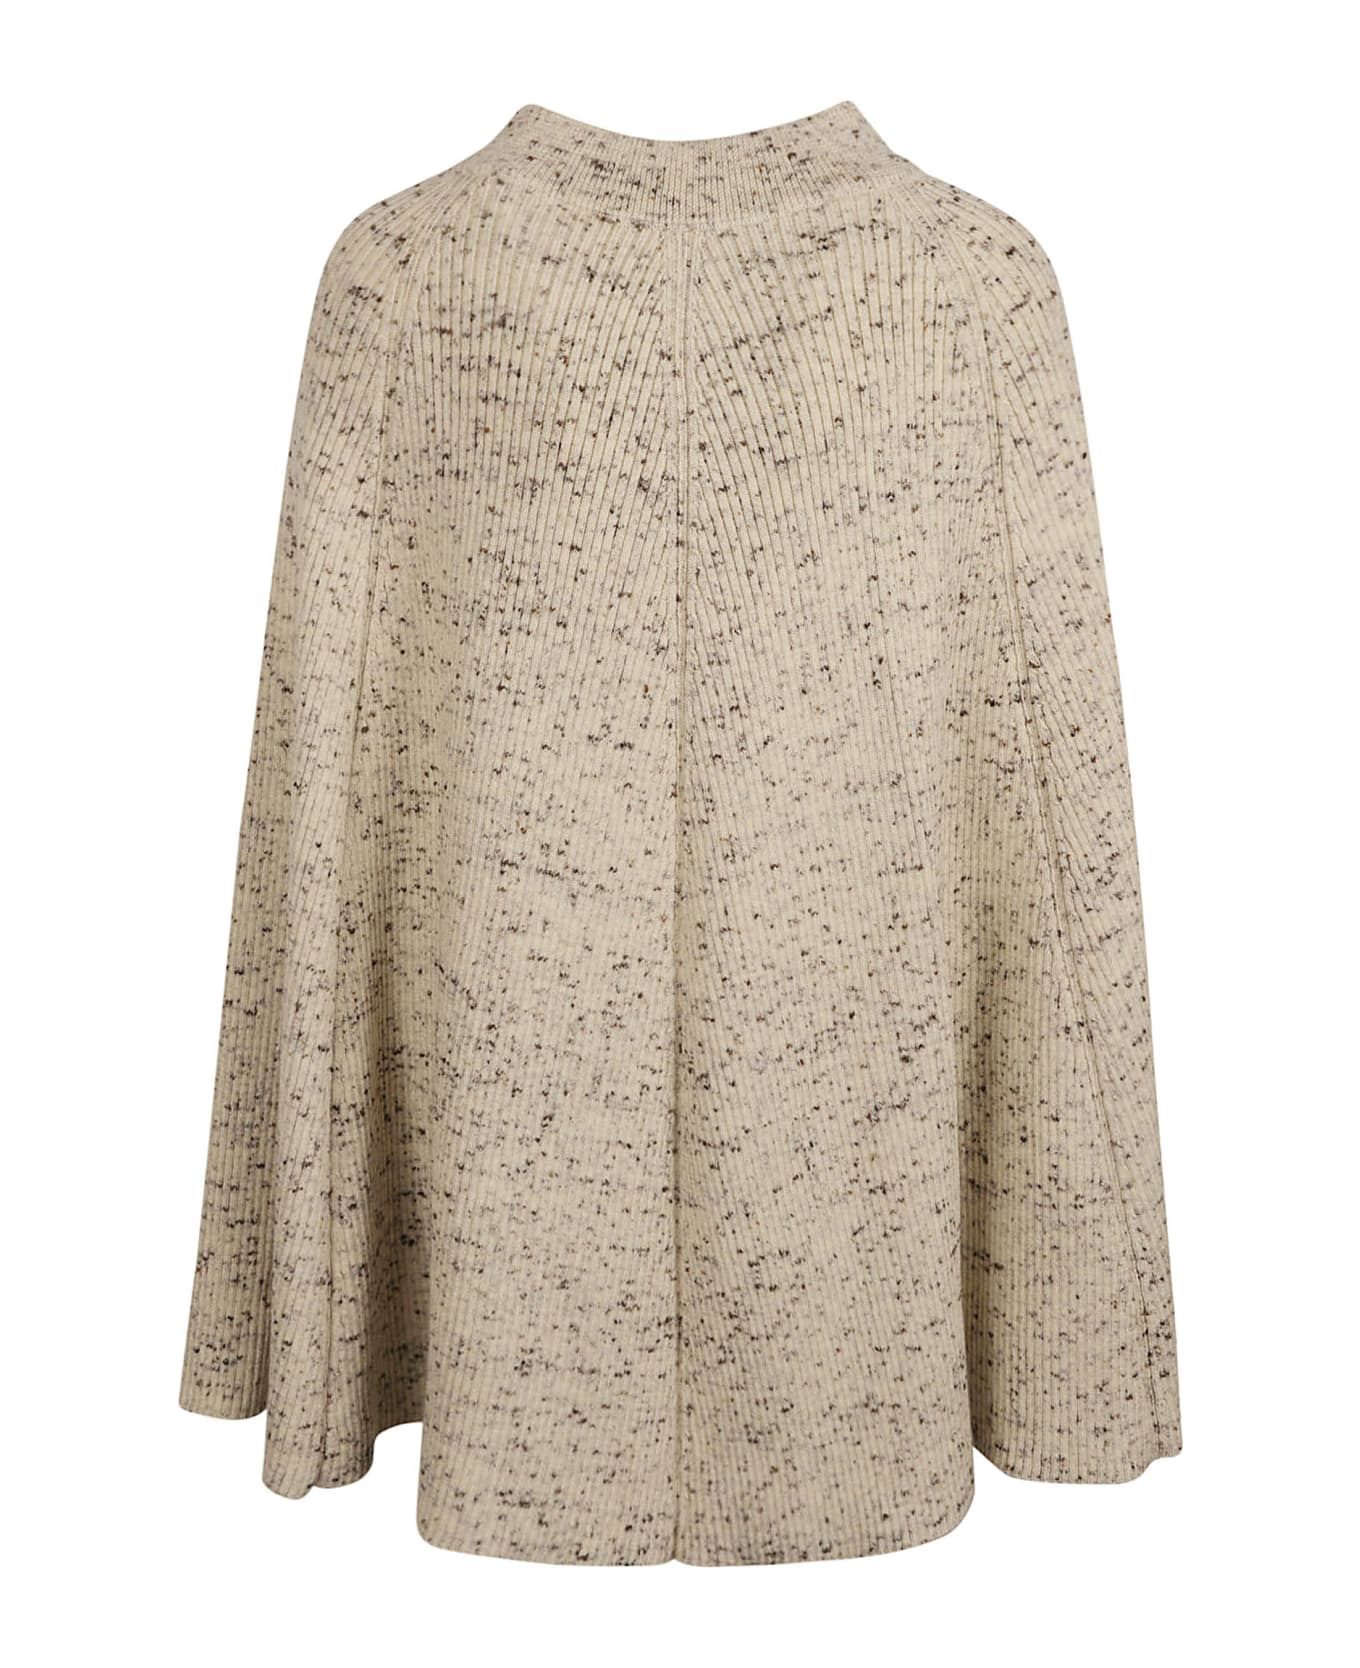 Jil Sander Fine Speckled Wool Skirt - Natural スカート